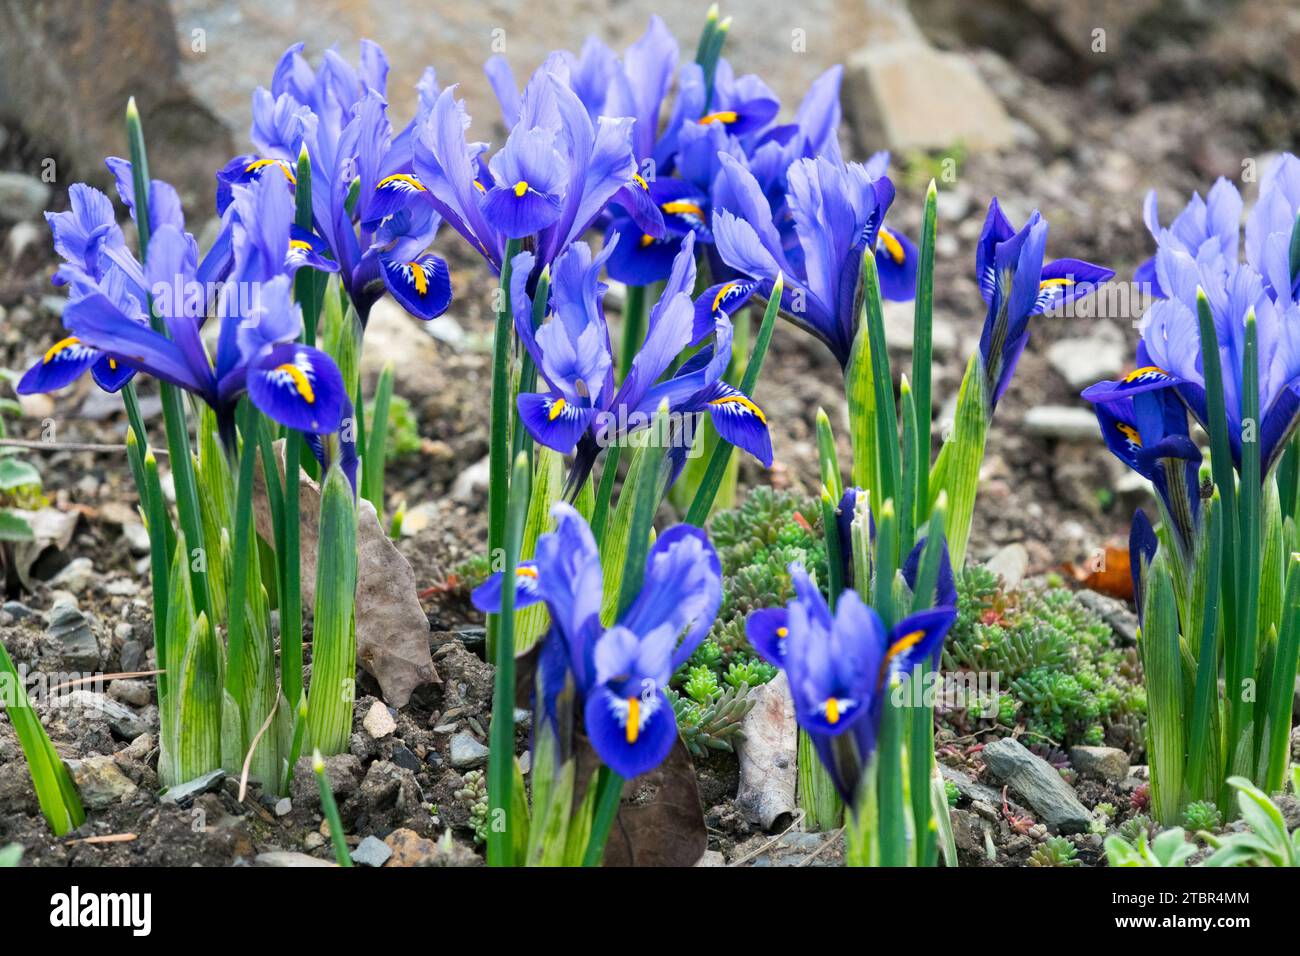 flowering, irises in Garden, Winter, Flowers, Blue, Iris 'Harmony' Reticulated Iris Stock Photo